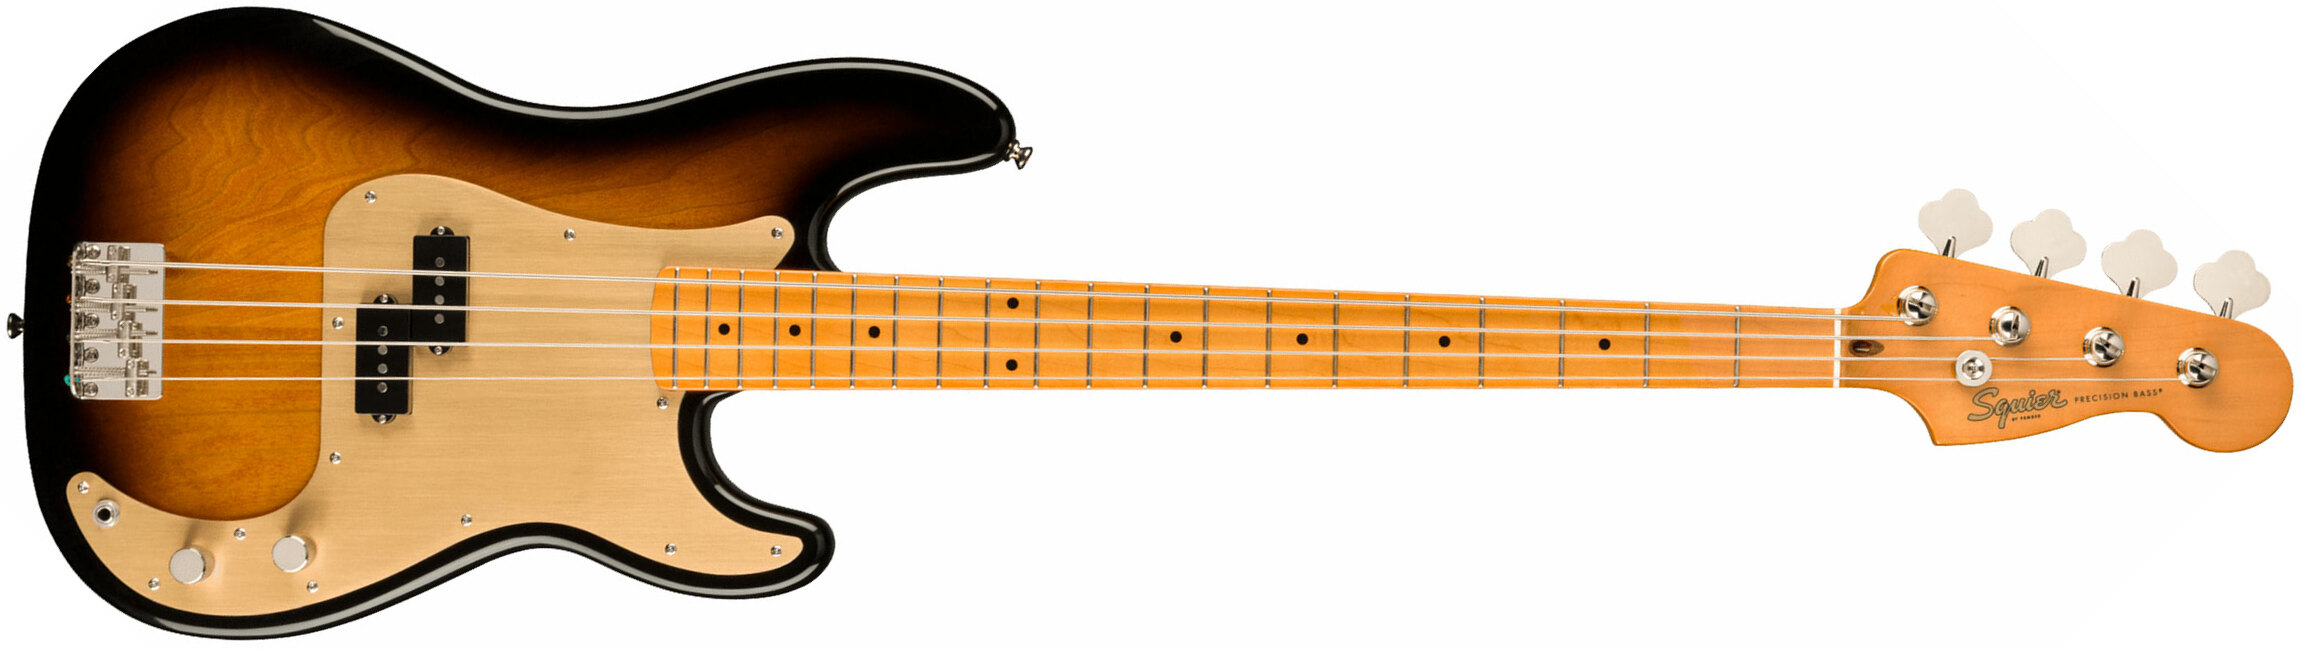 Squier Precision Bass Late '50s Classic Vibe Fsr Ltd Mn - 2-color Sunburst - Basse Électrique Solid Body - Main picture